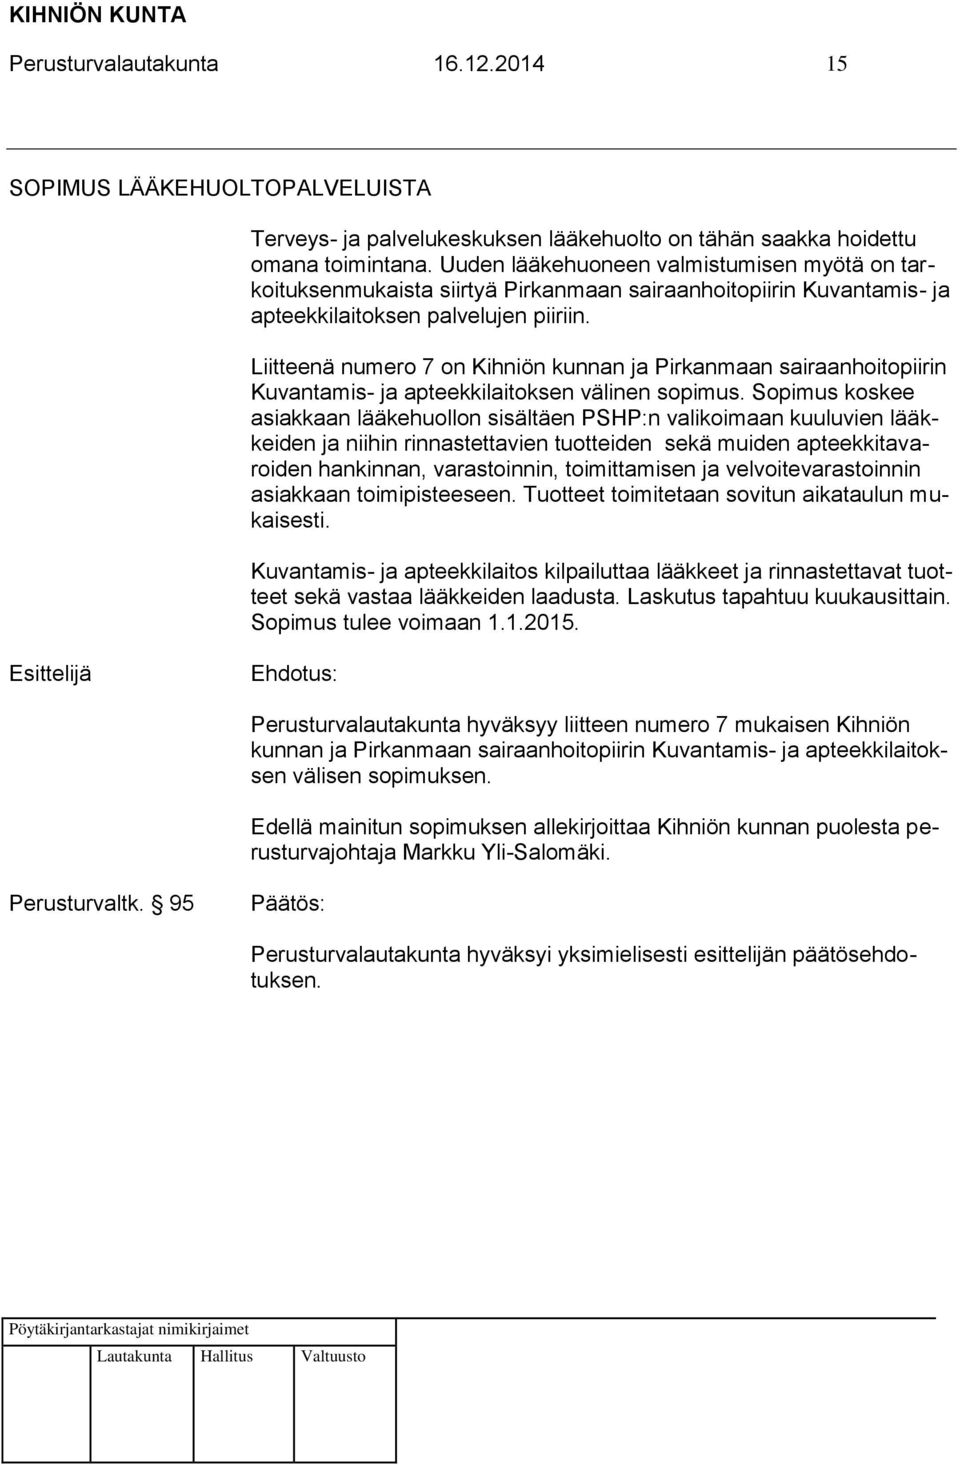 Liitteenä numero 7 on Kihniön kunnan ja Pirkanmaan sairaanhoitopiirin Kuvantamis- ja apteekkilaitoksen välinen sopimus.